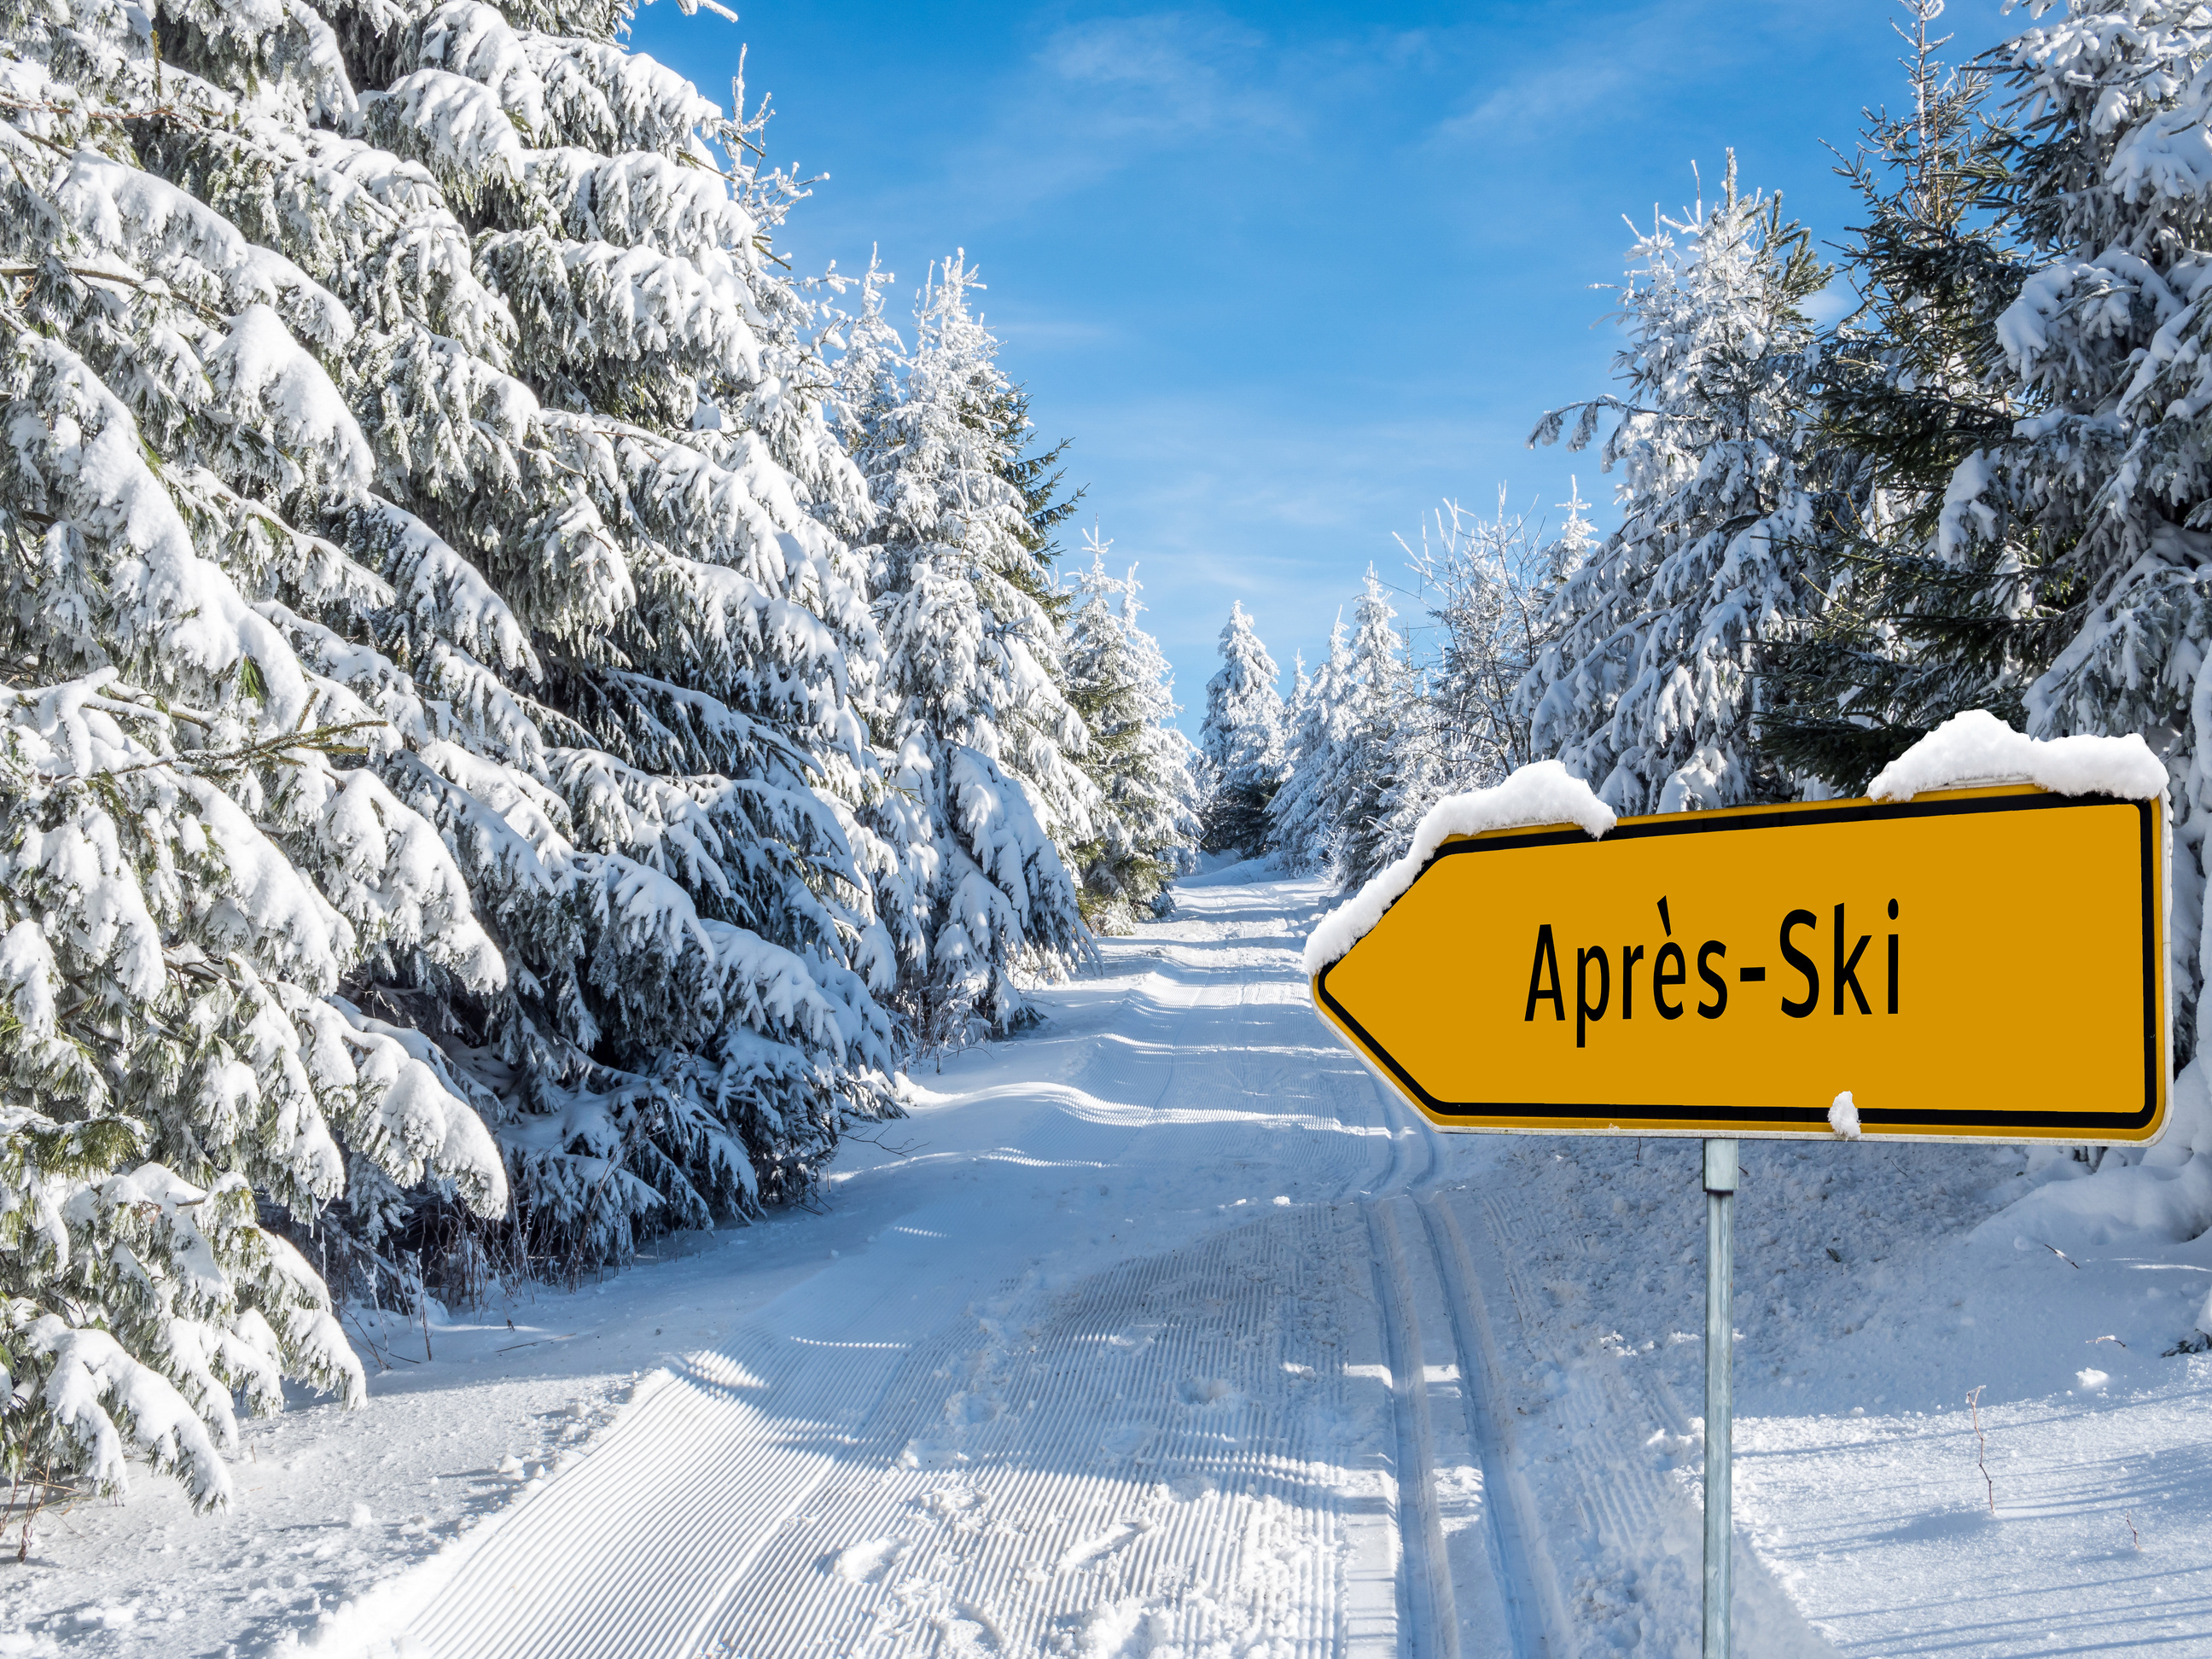 Apres Ski Party in the winter landscape